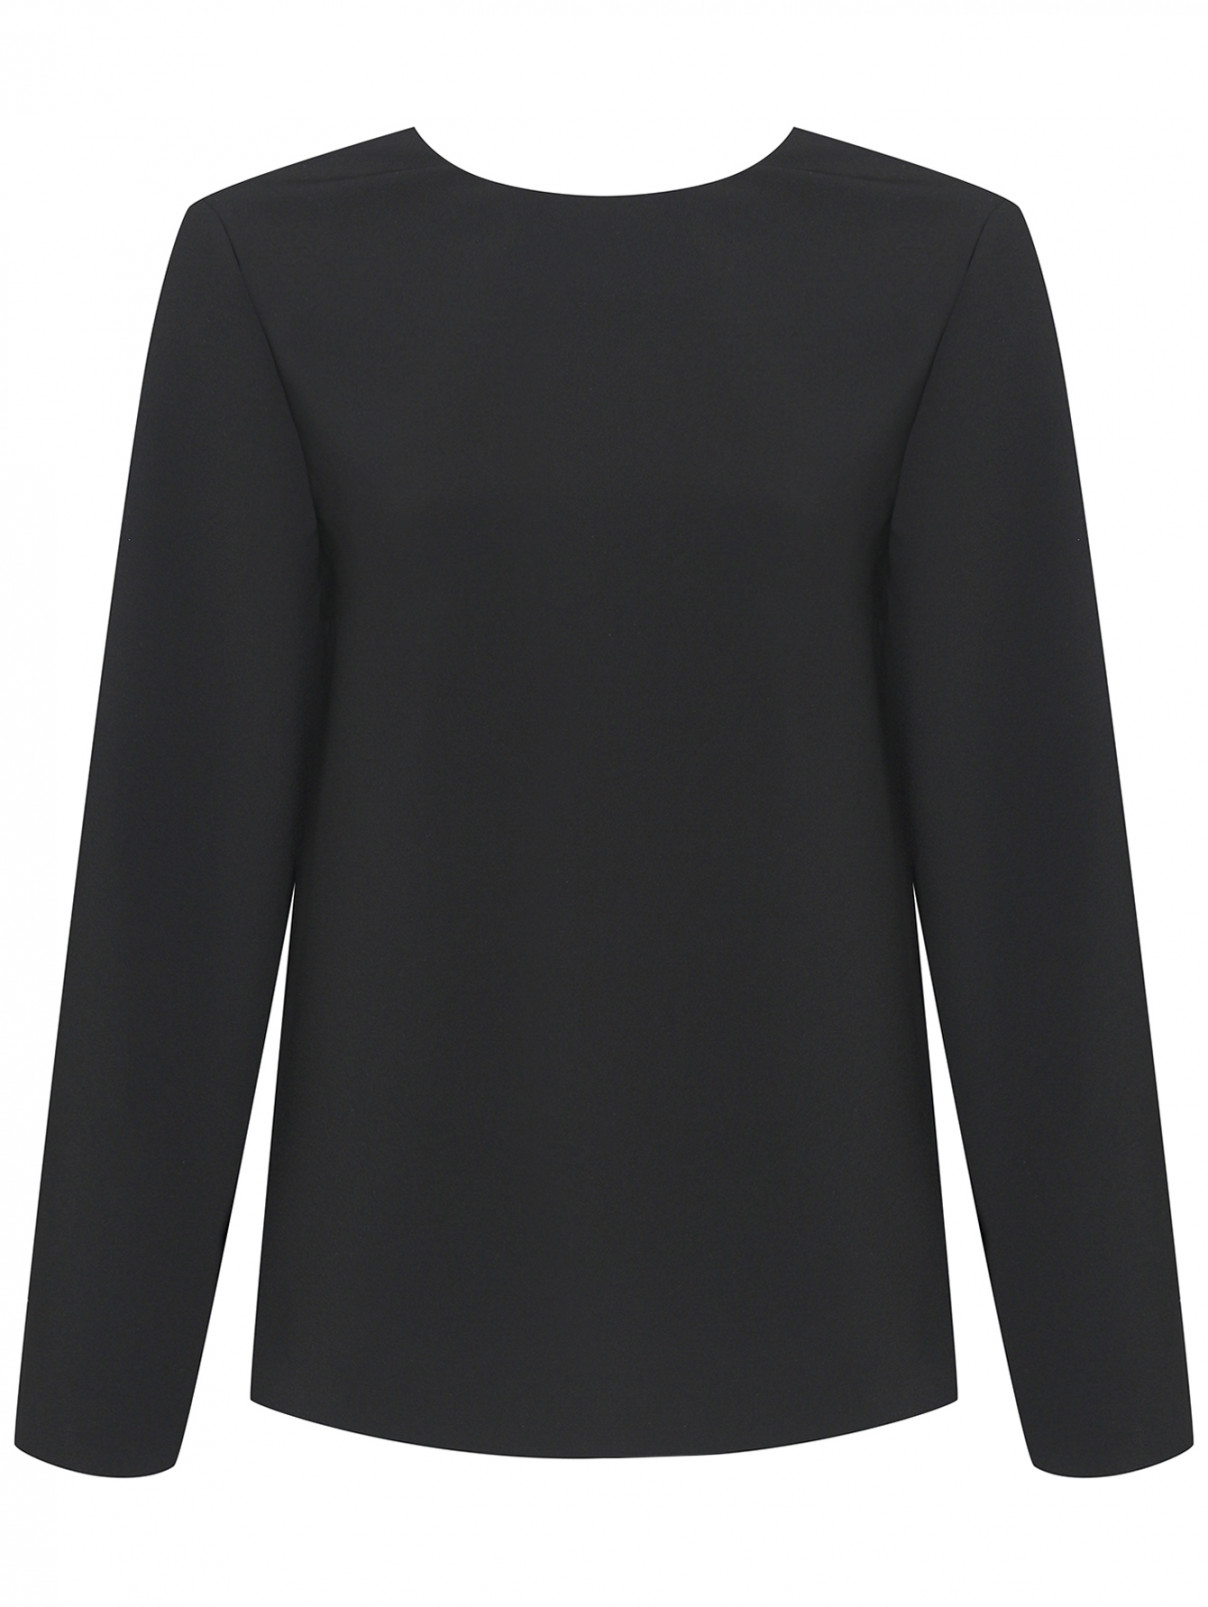 Однотонная блуза с логотипом Nina Ricci  –  Общий вид  – Цвет:  Черный